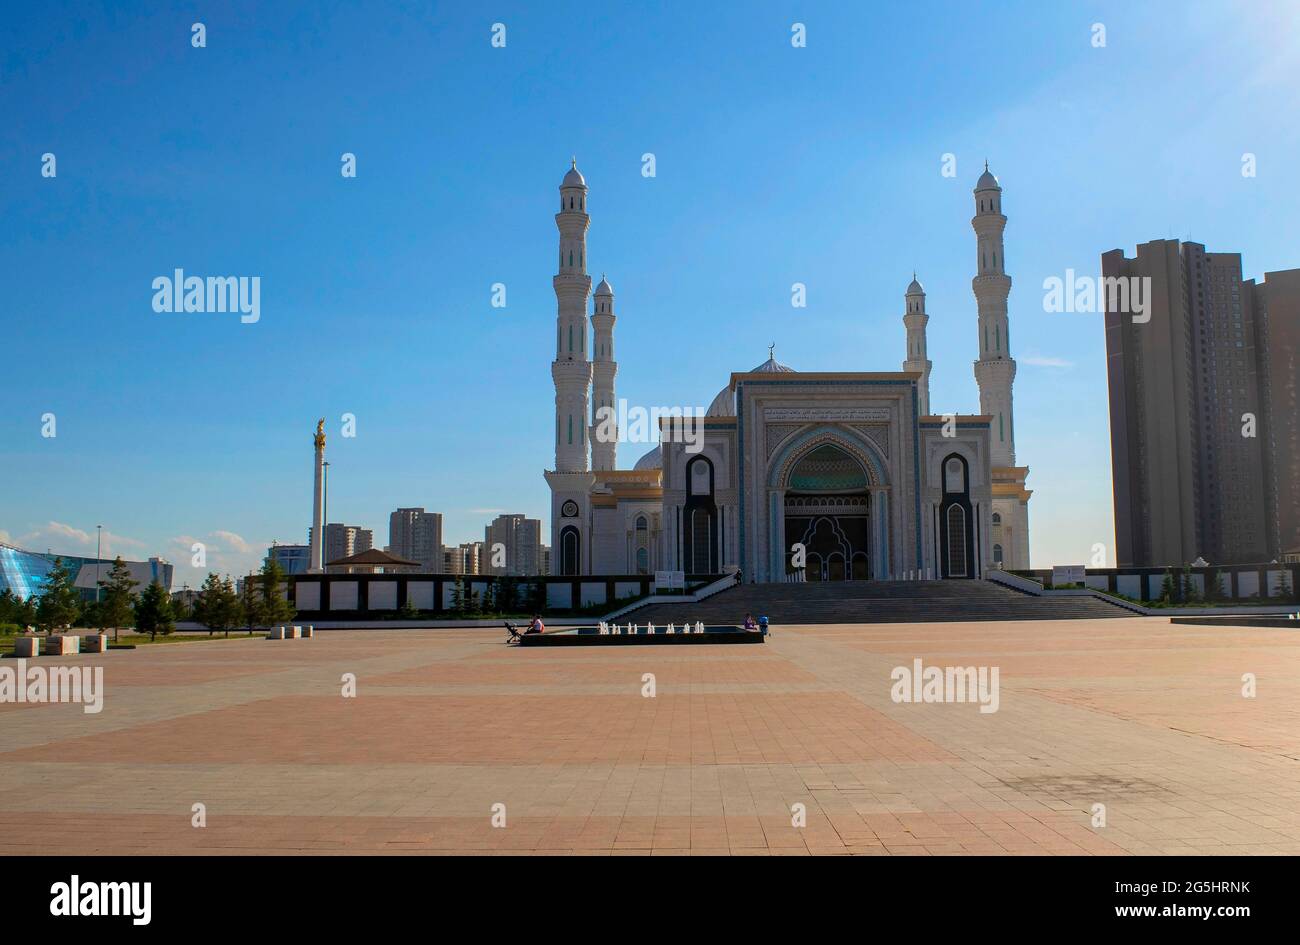 Nur-Sultan - Kazakhstan: 10 juin 2021: Mosquée Hazret Sultan pendant une journée sur le fond bleu clair du ciel, heure d'été Banque D'Images